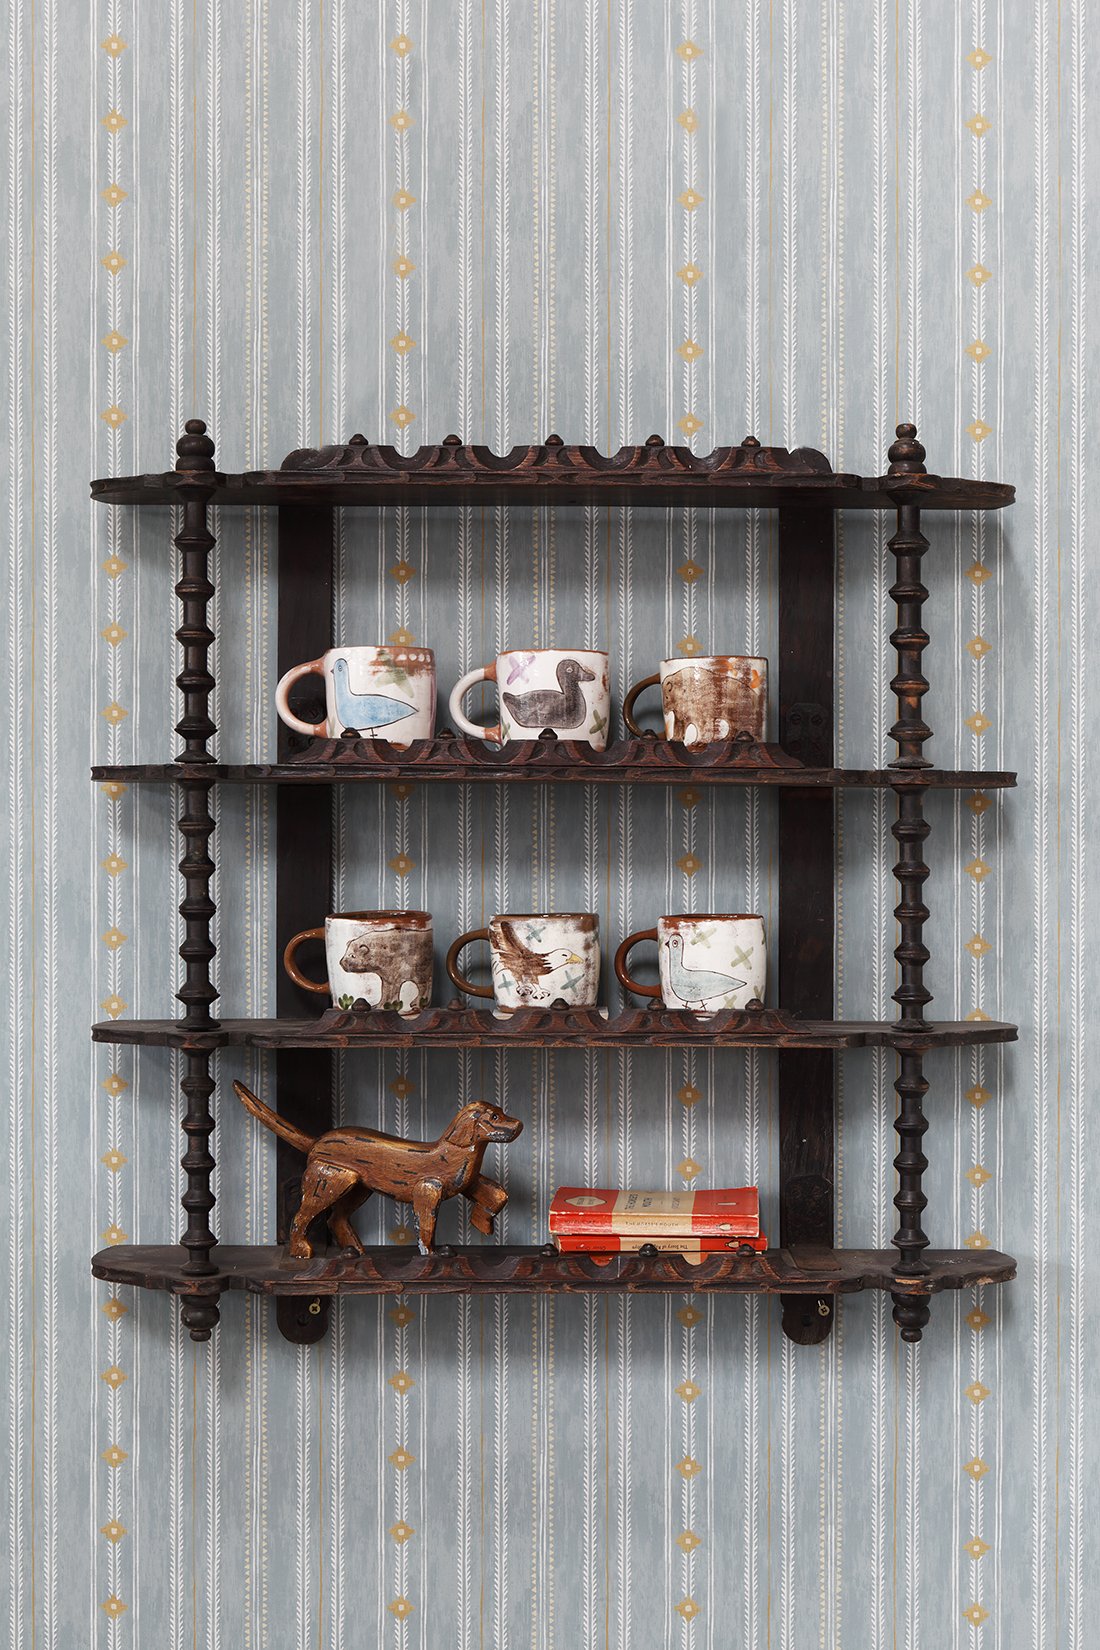 Decorative Cotton Reel Shelves